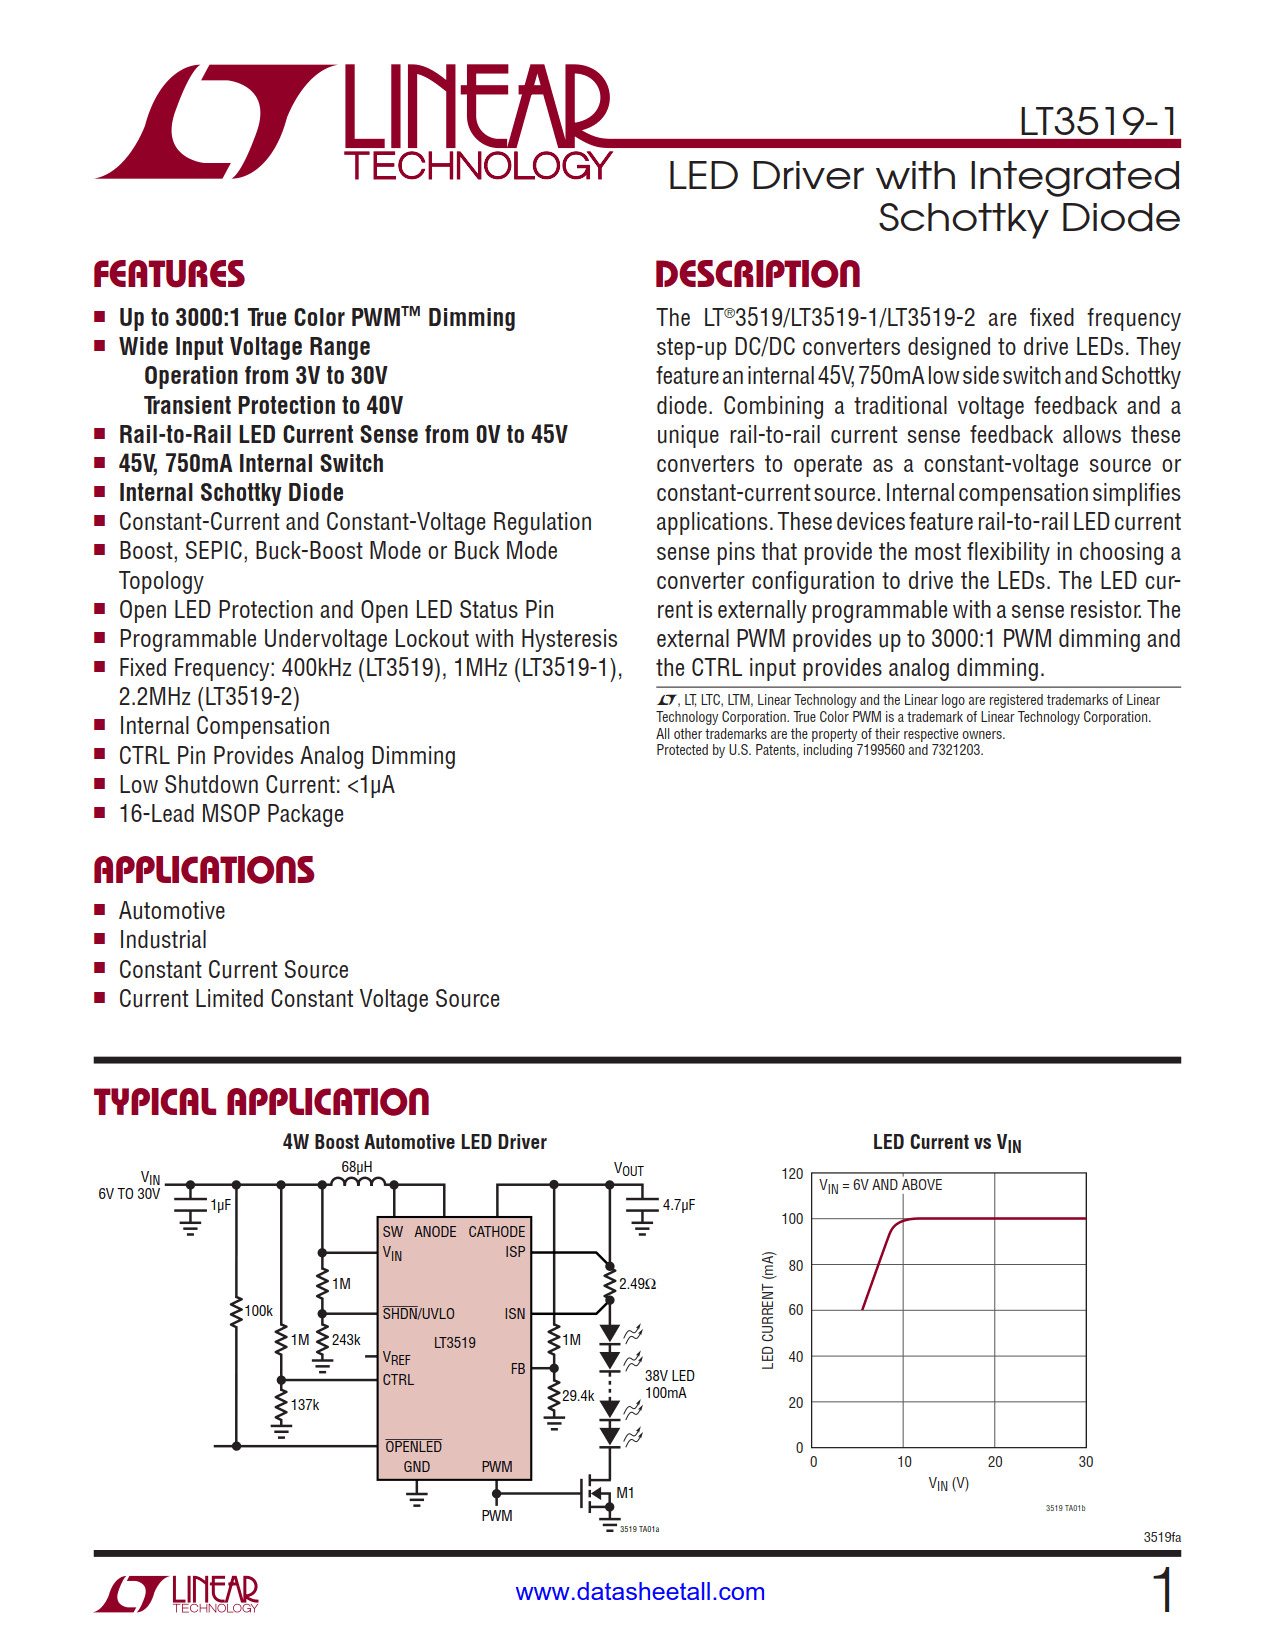 LT3519-1 Datasheet